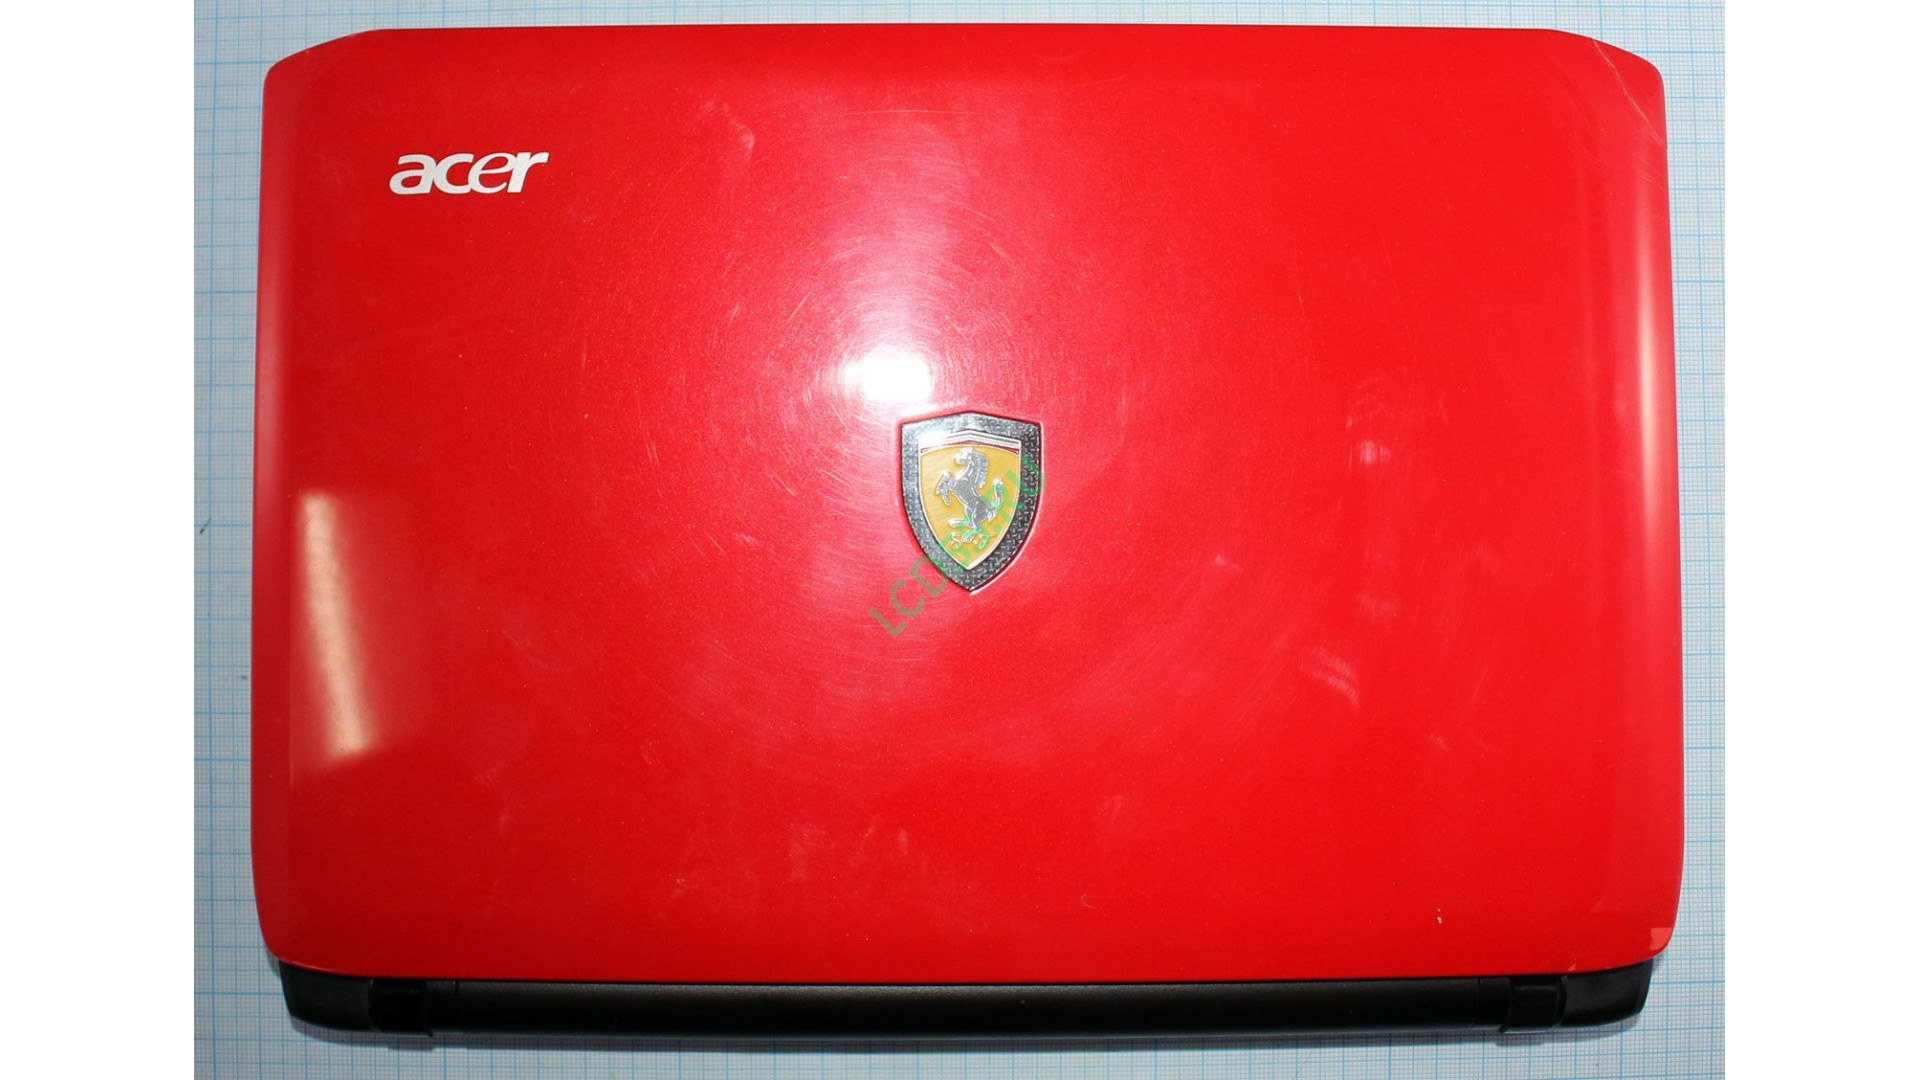 Нетбук Acer Ferrari one F0200-314G25i (Quanta ZH6 rev: E)